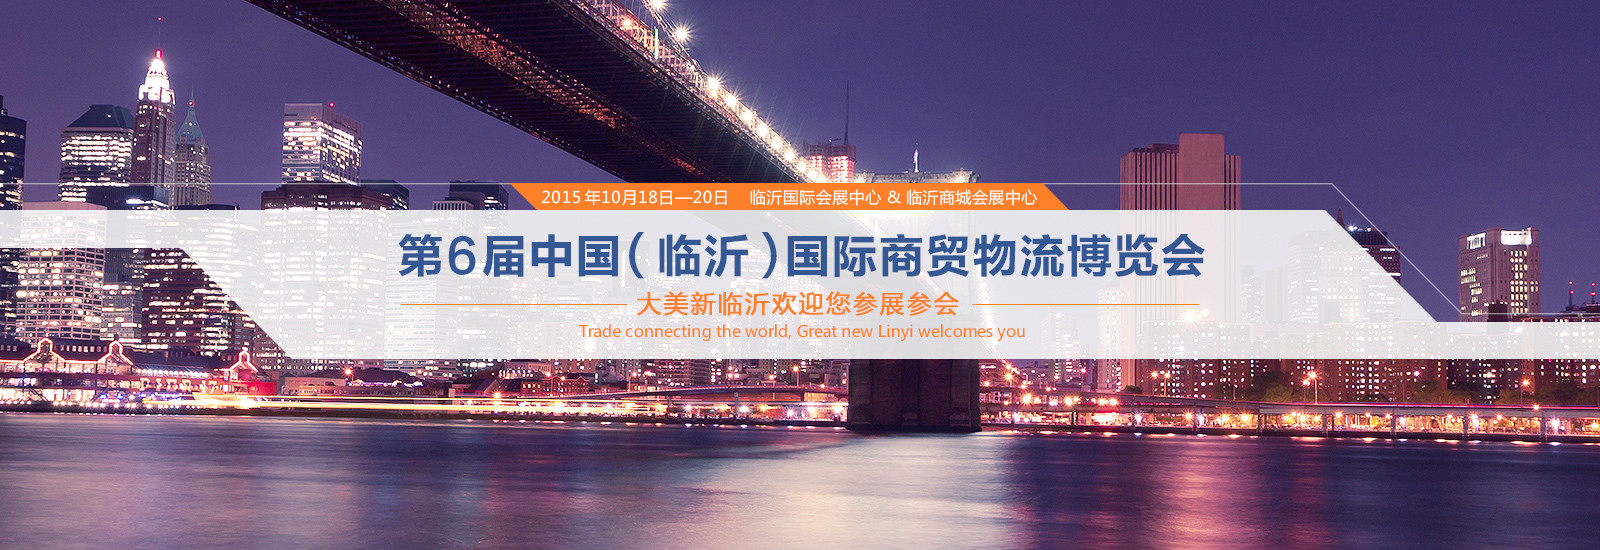 中國國際商貿物流博覽會